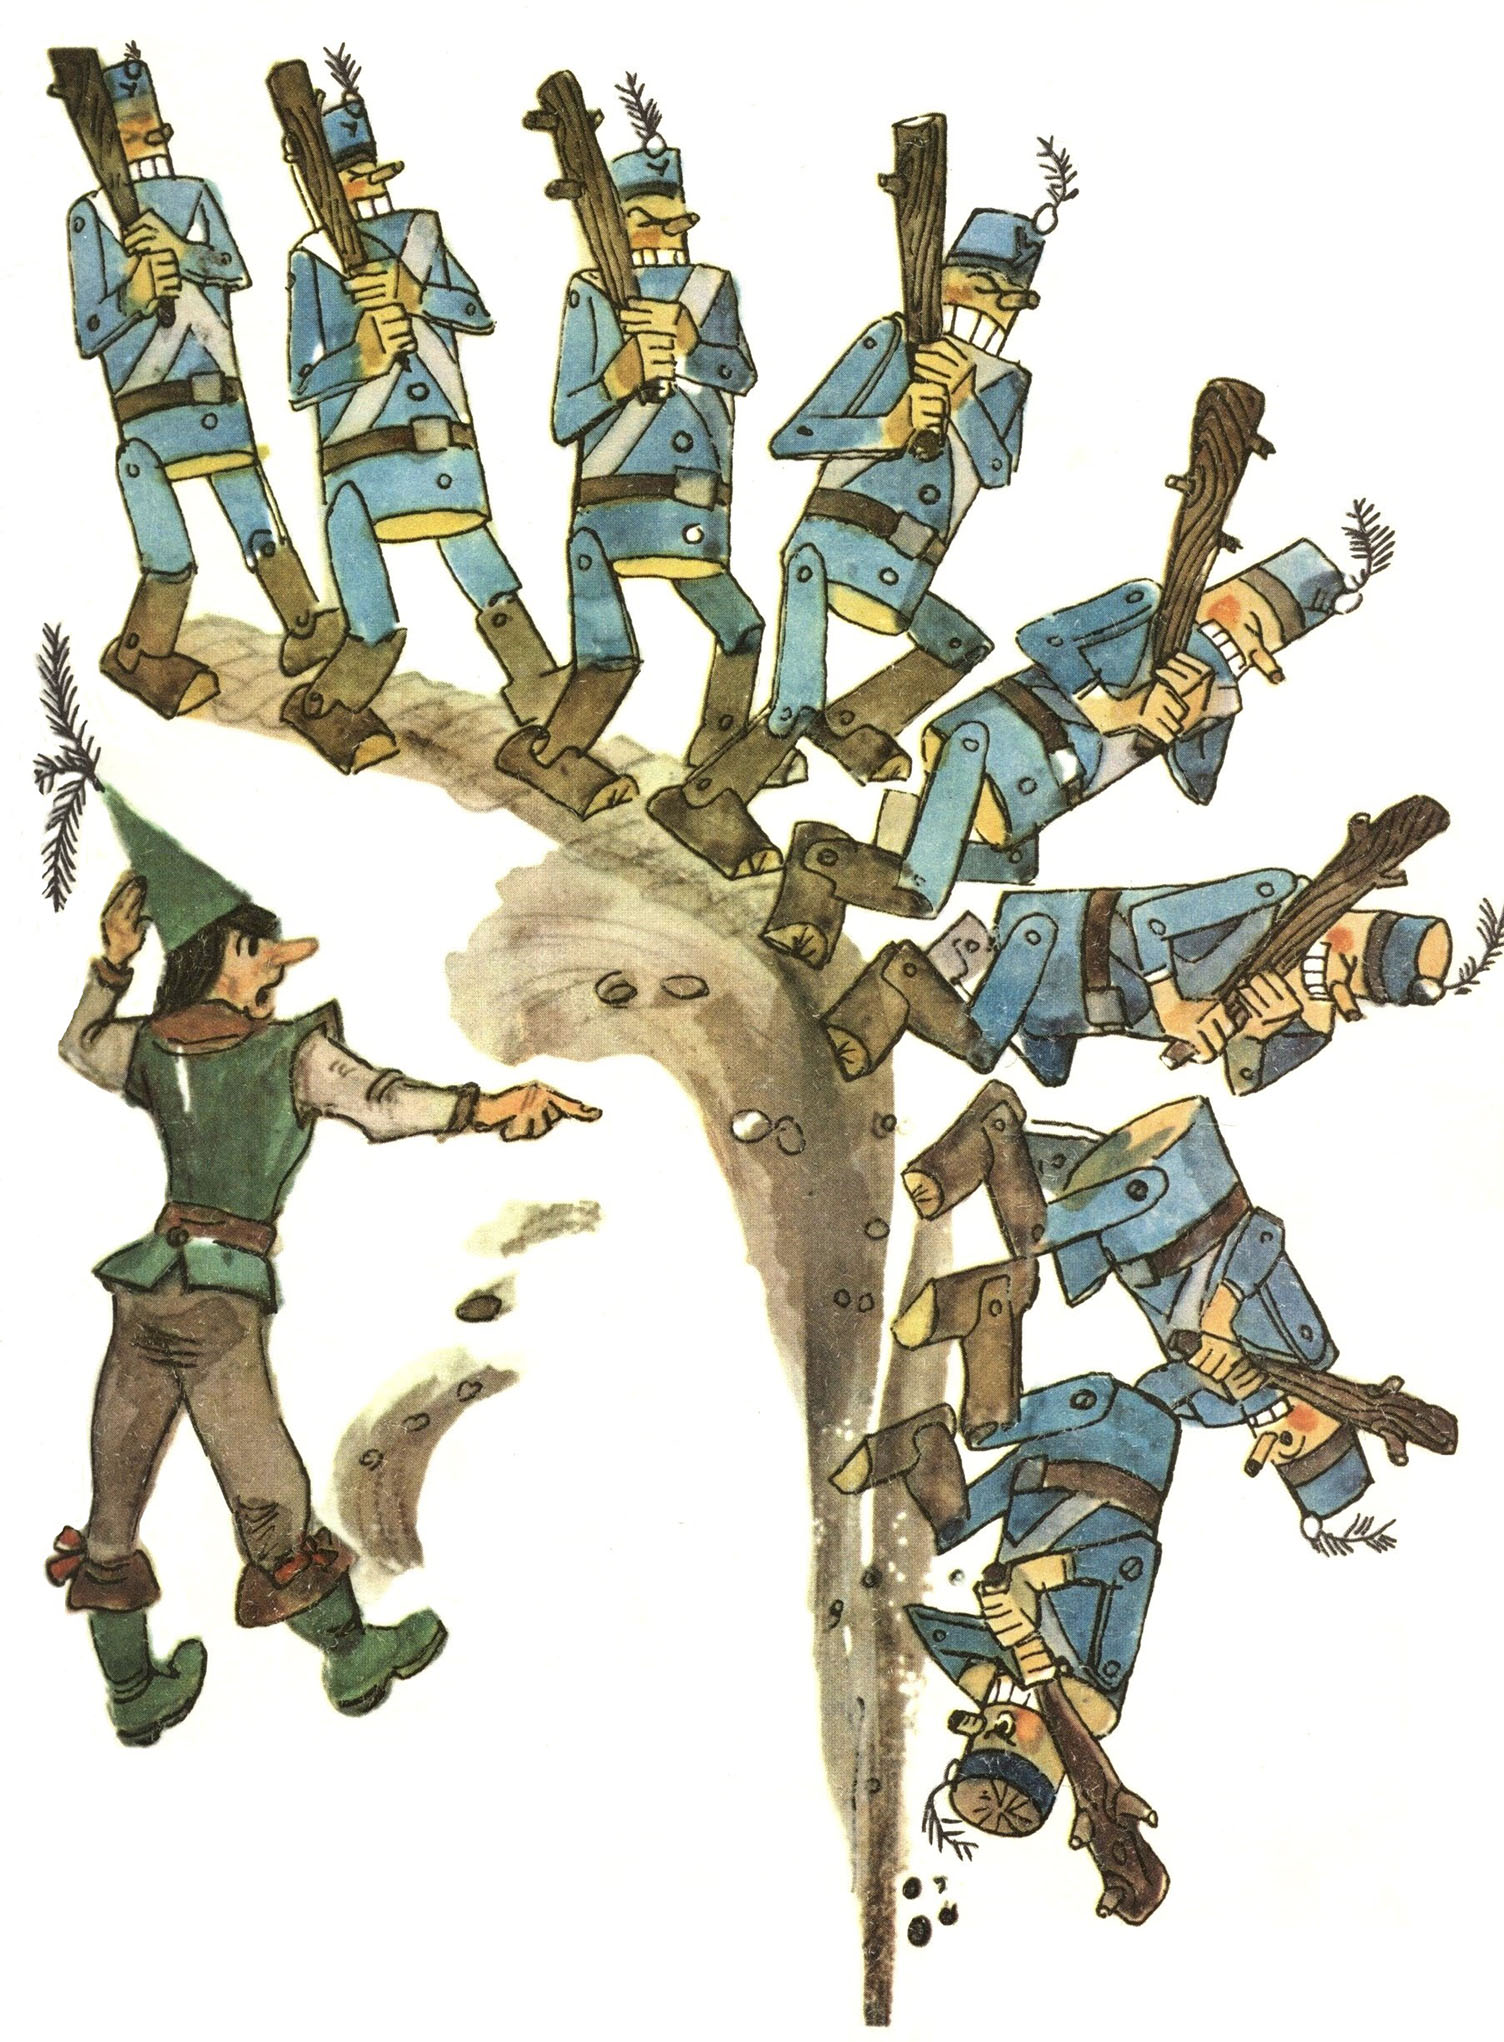 Урфин джюс и его деревянные солдаты